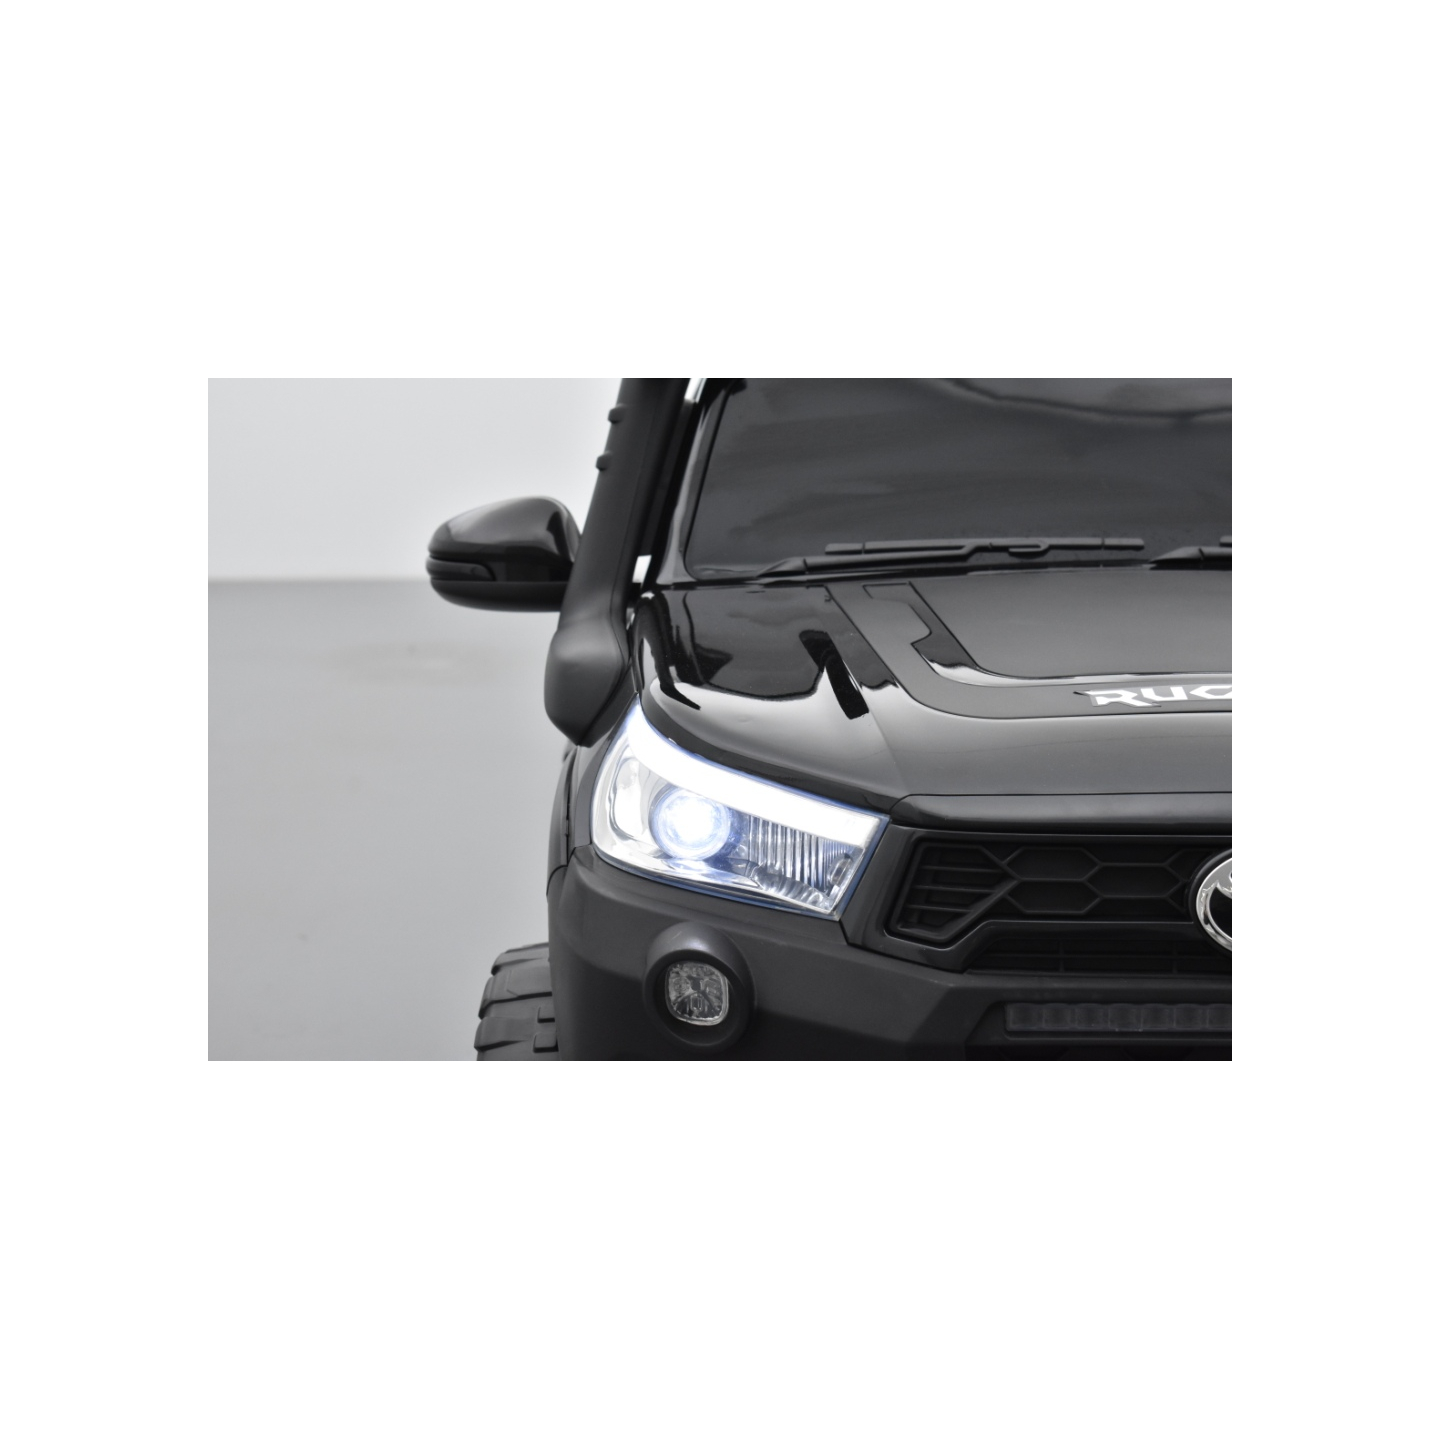 Toyota Hilux noir 24 Volts électrique pour enfant écran mp4, 4x4 électrique enfant 2 places